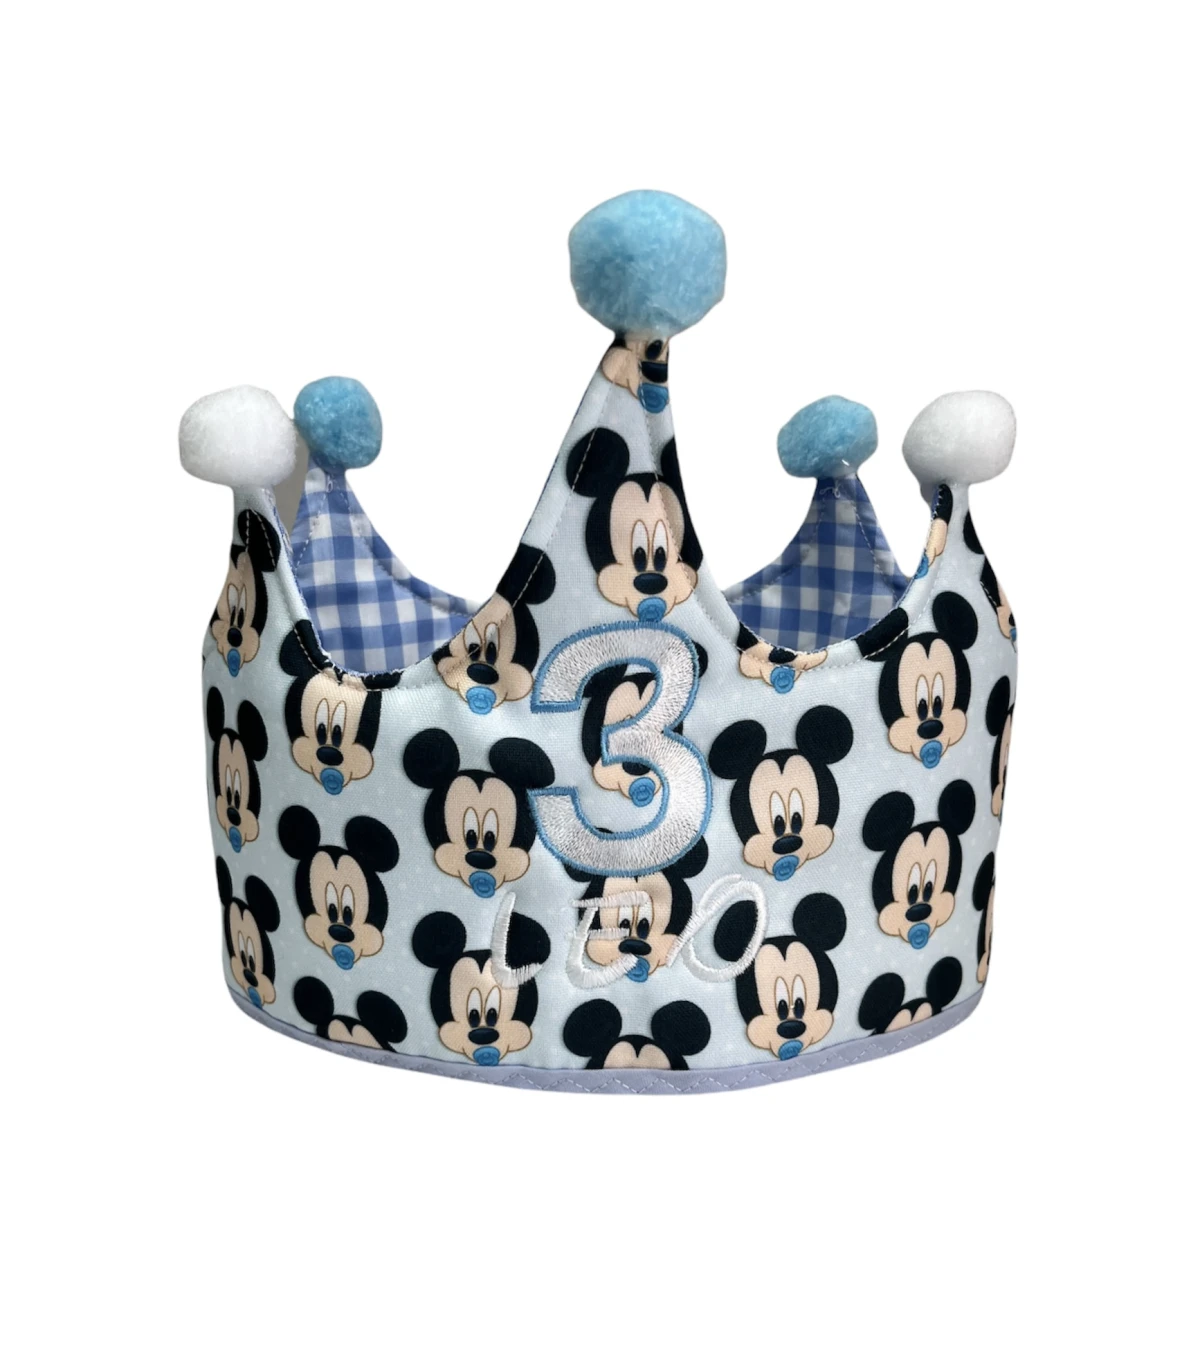 Corona de cumpleaños Toy Story – Telas y retales